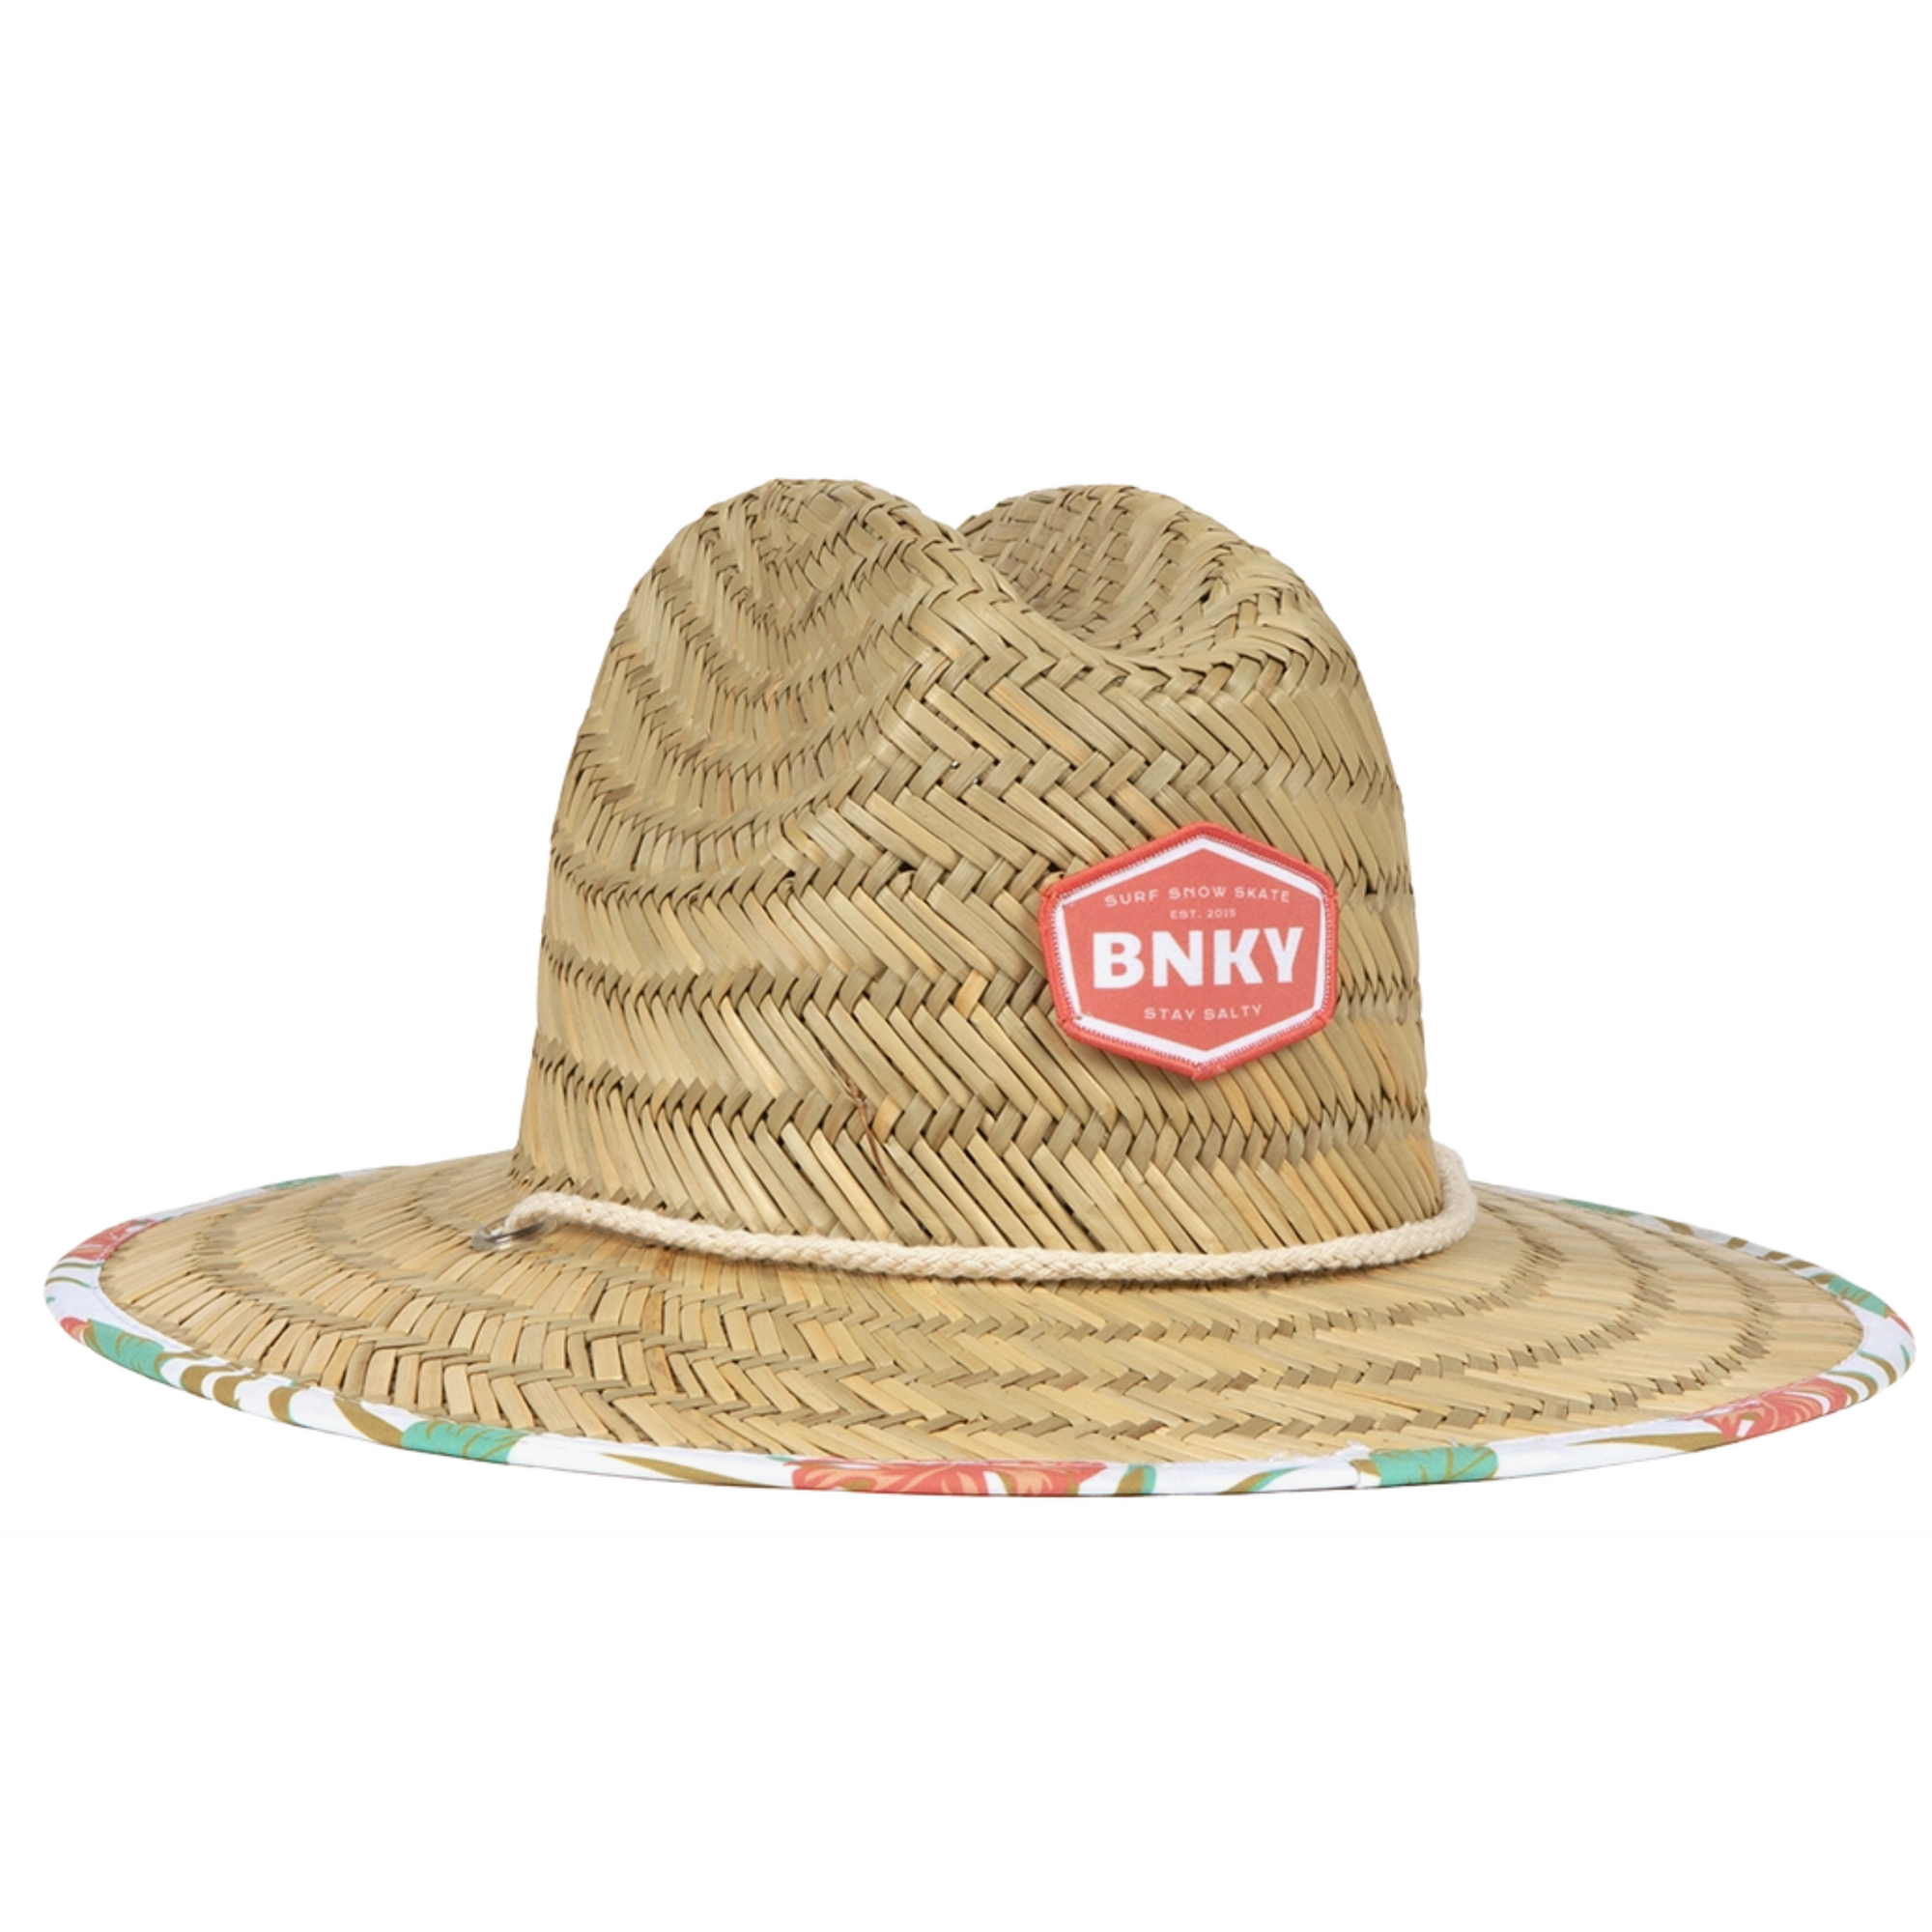 barney patrol (coral) straw hat